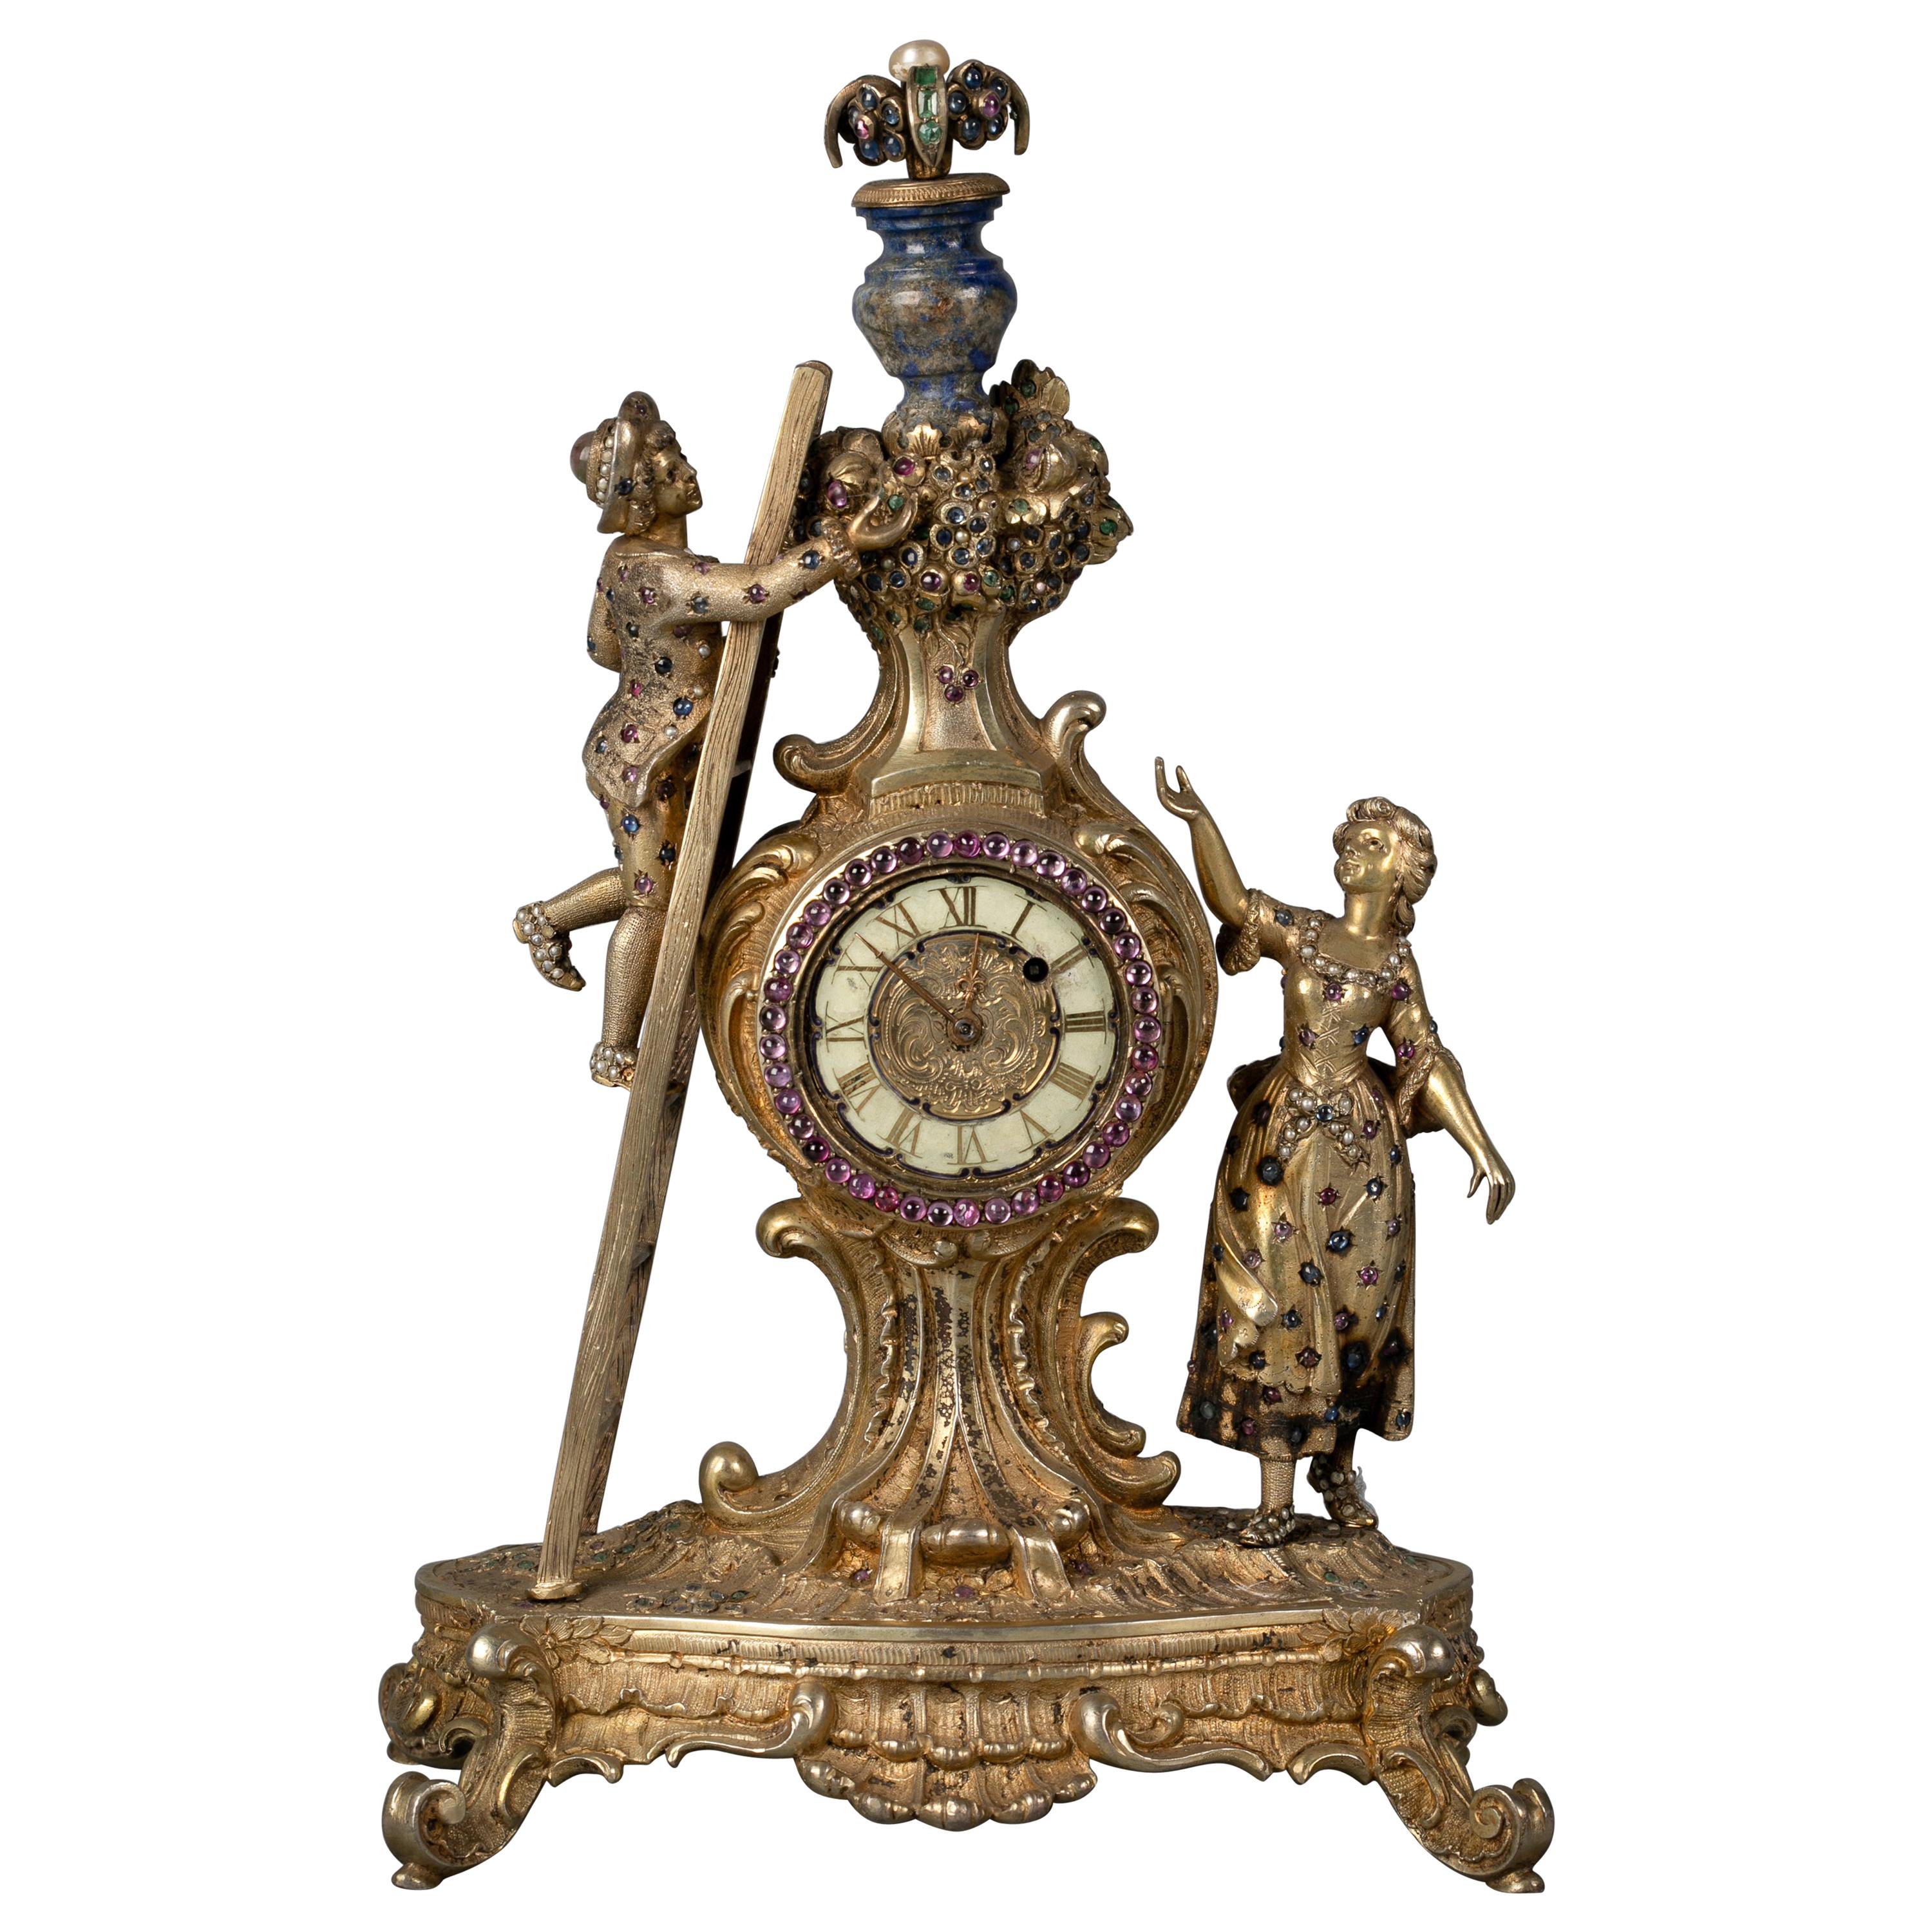 Horloge viennoise figurative en argent doré, lapis et ornements ornés de bijoux, vers 1880